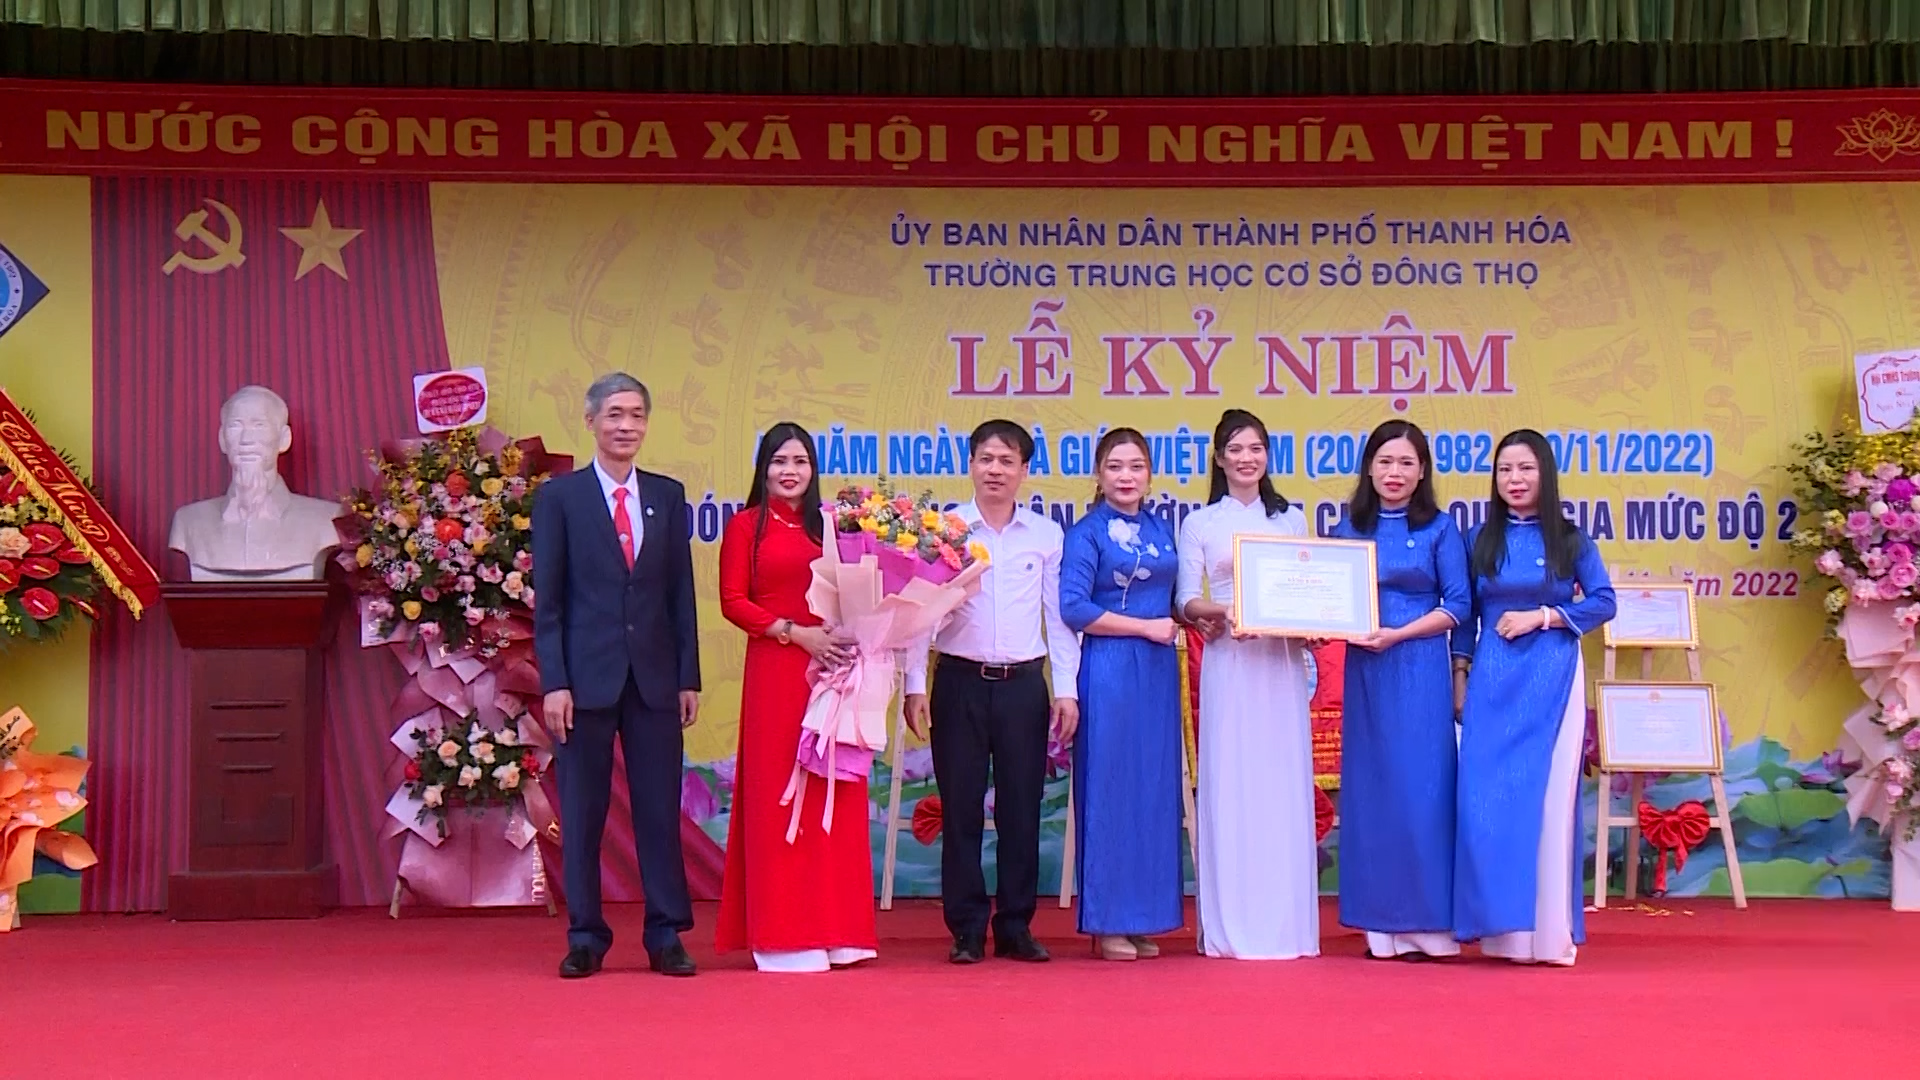 Trường THCS Đông Thọ, thành phố Thanh Hóa đón bằng công nhận đạt chuẩn Quốc gia mức độ 2 - Ảnh 2.